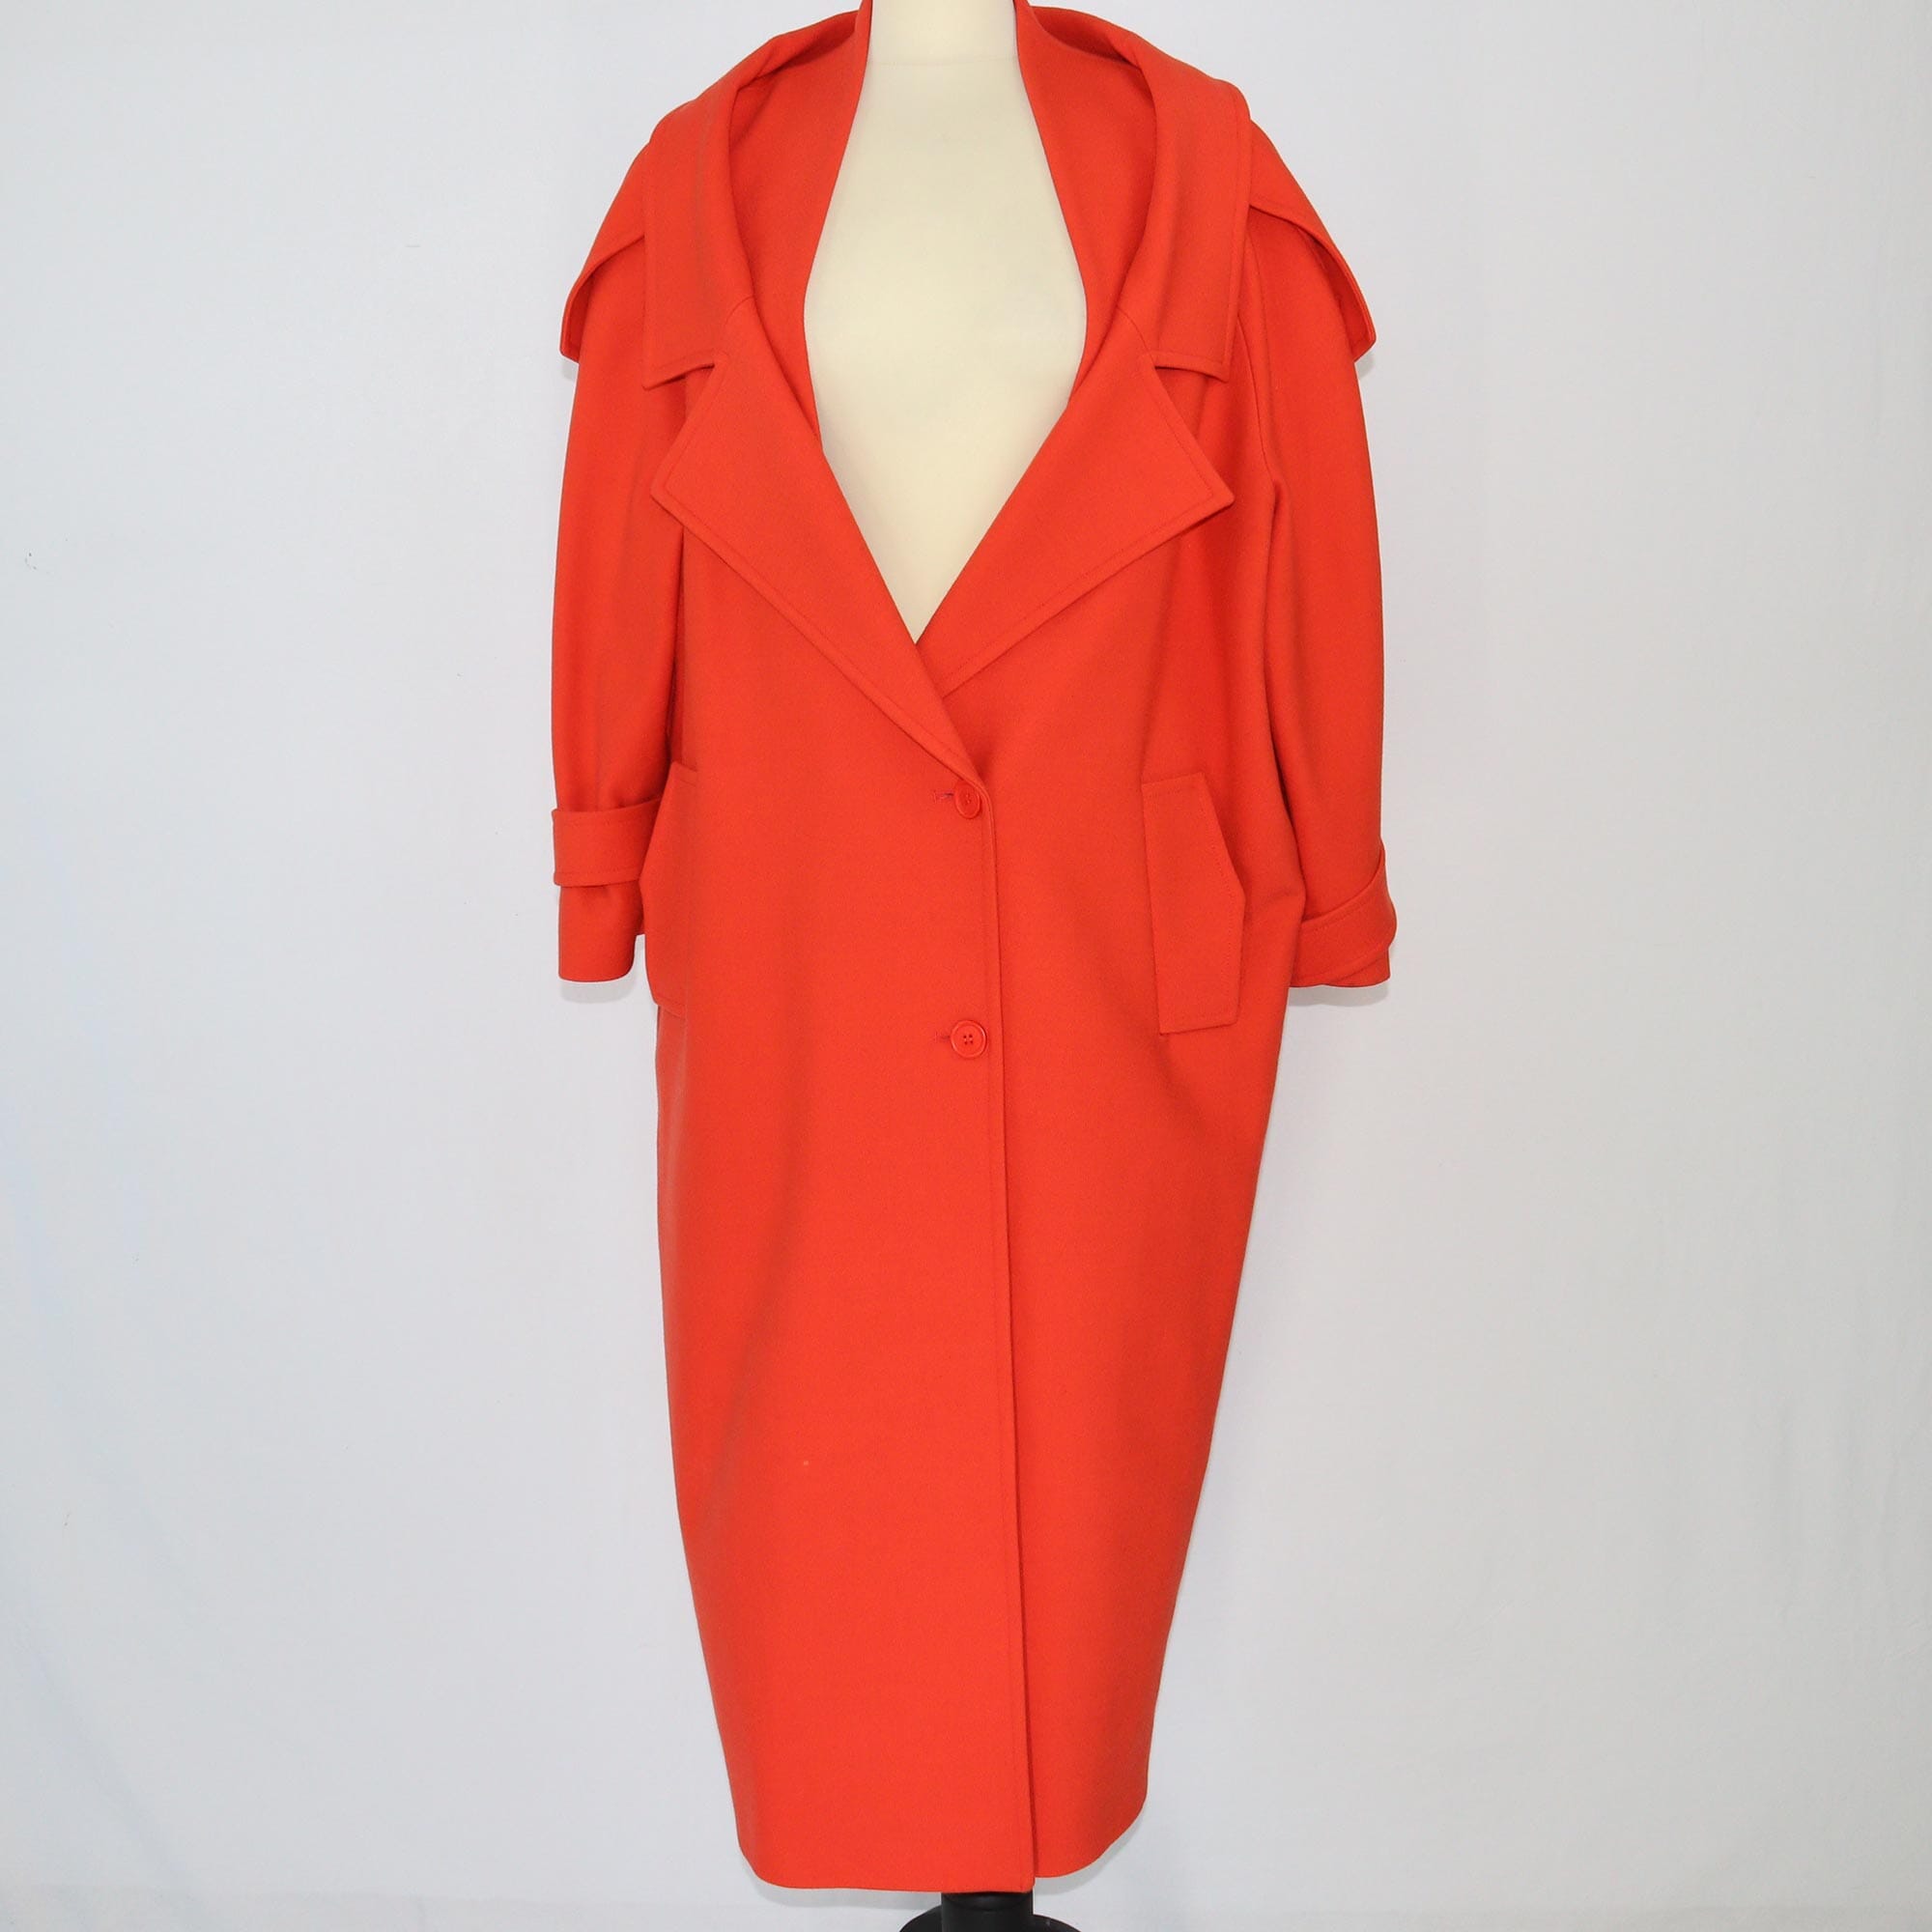 Preen by Thornton Bregazzi Orange Coat Clothing Preen by Thornton Bregazzi 